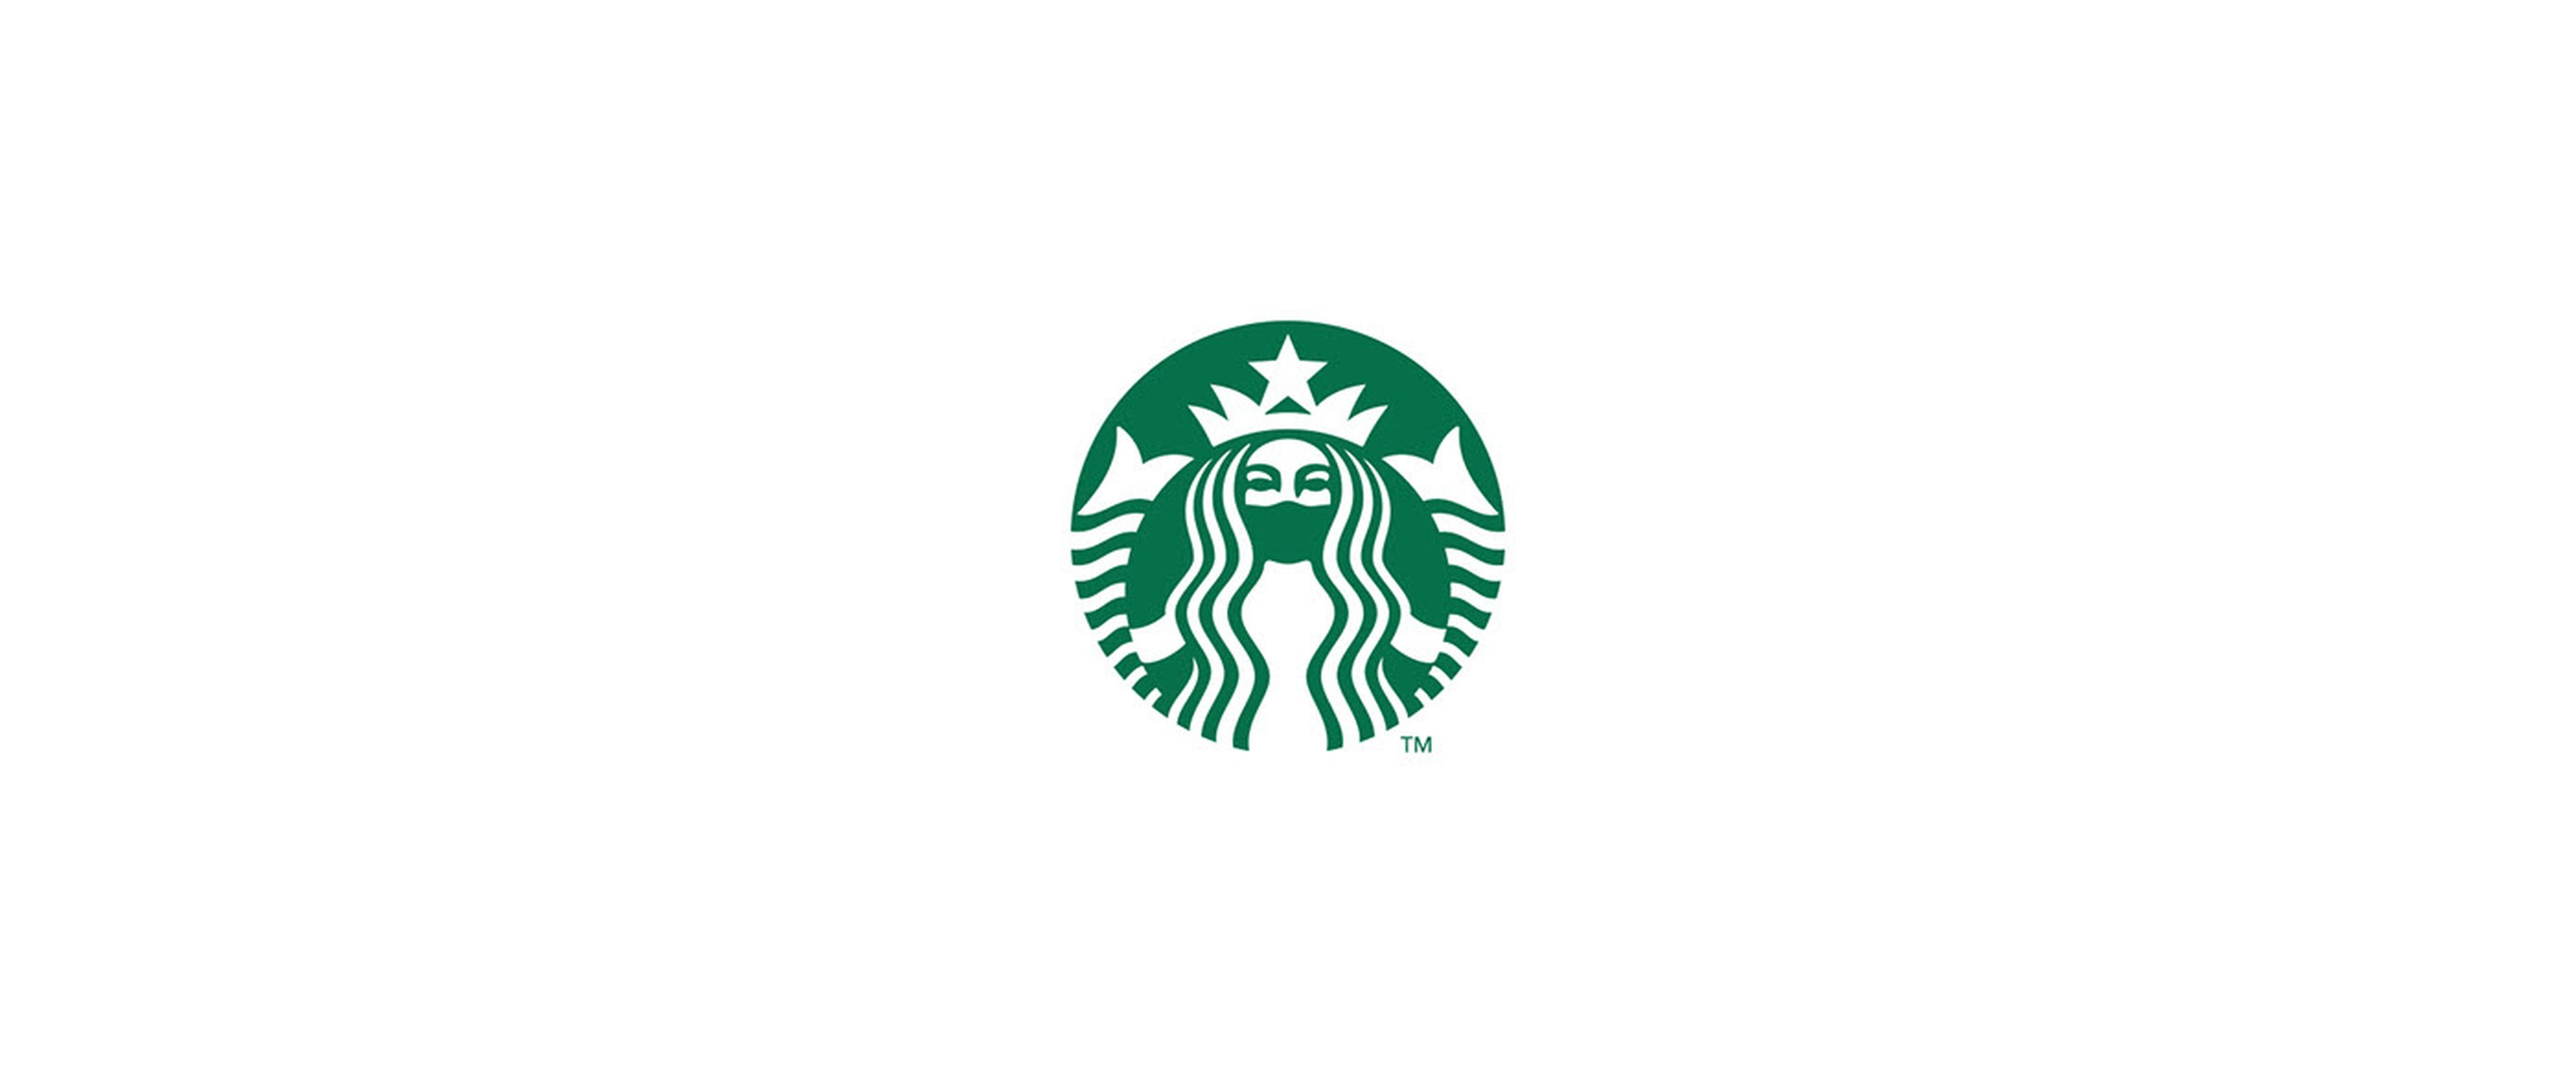 Logo de Starbucks diseñado por Jure Tovrljan.